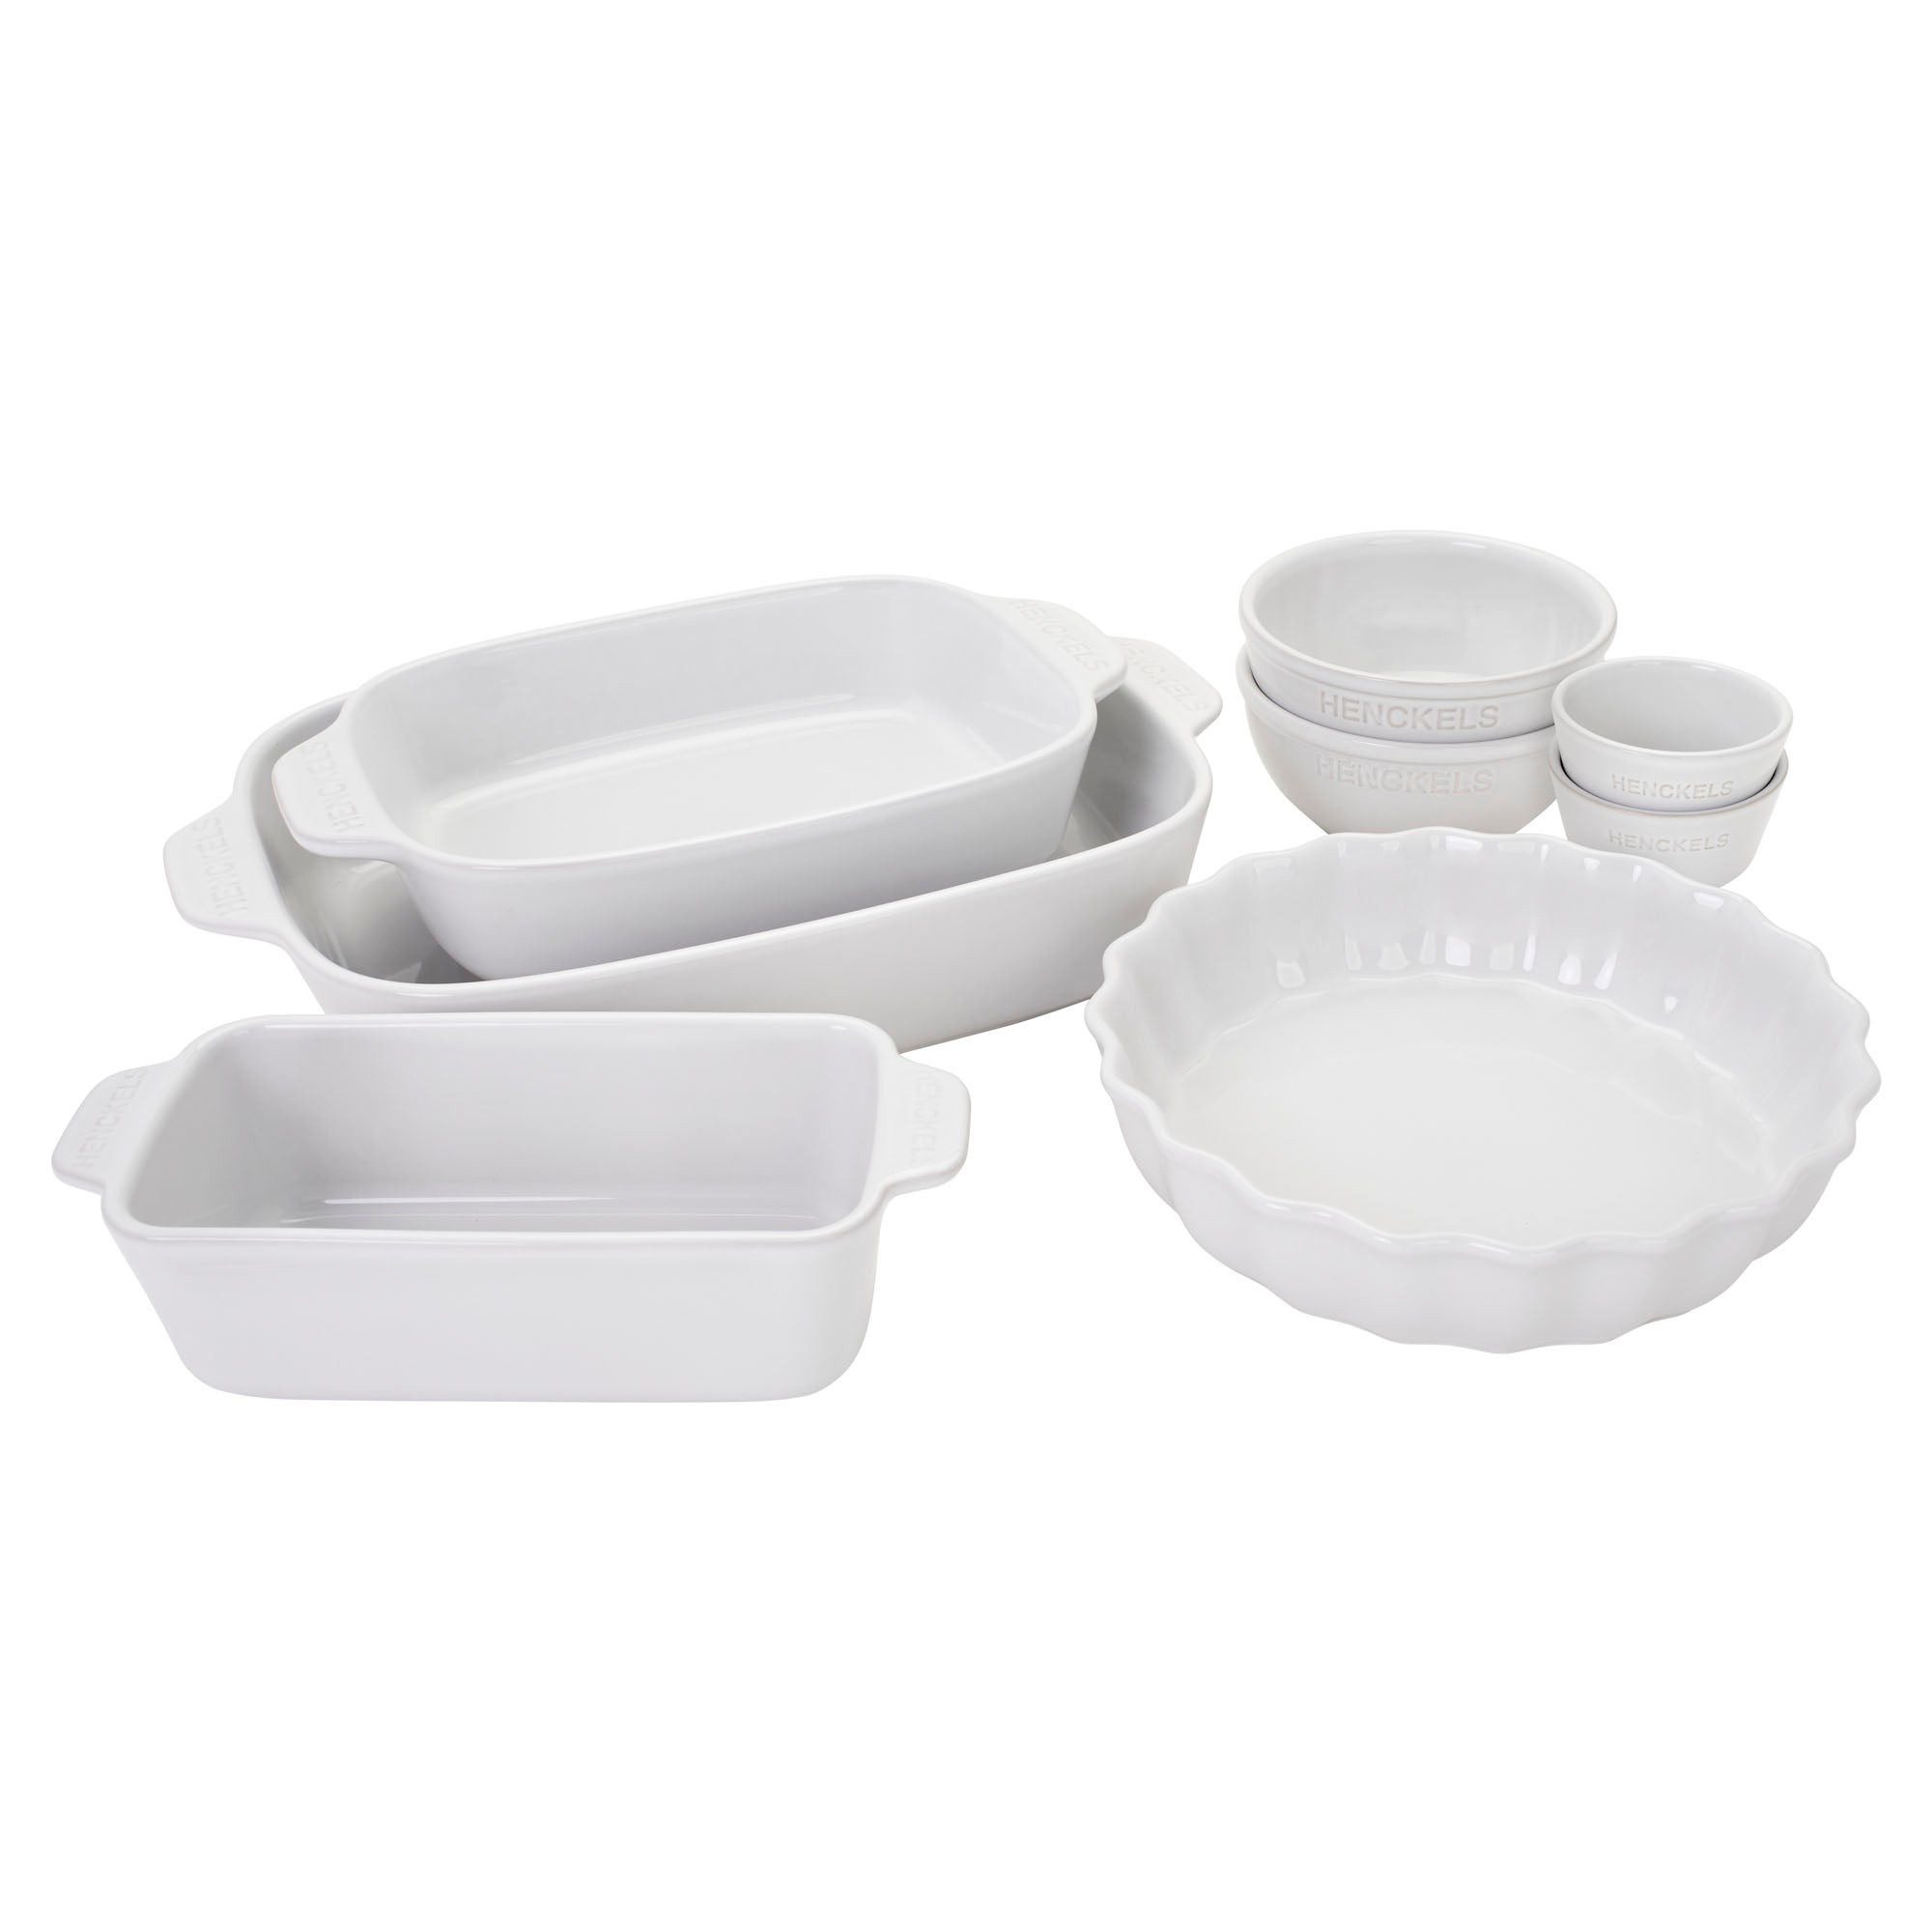 8pc Ceramic Mixed Bakeware & Serving Set White